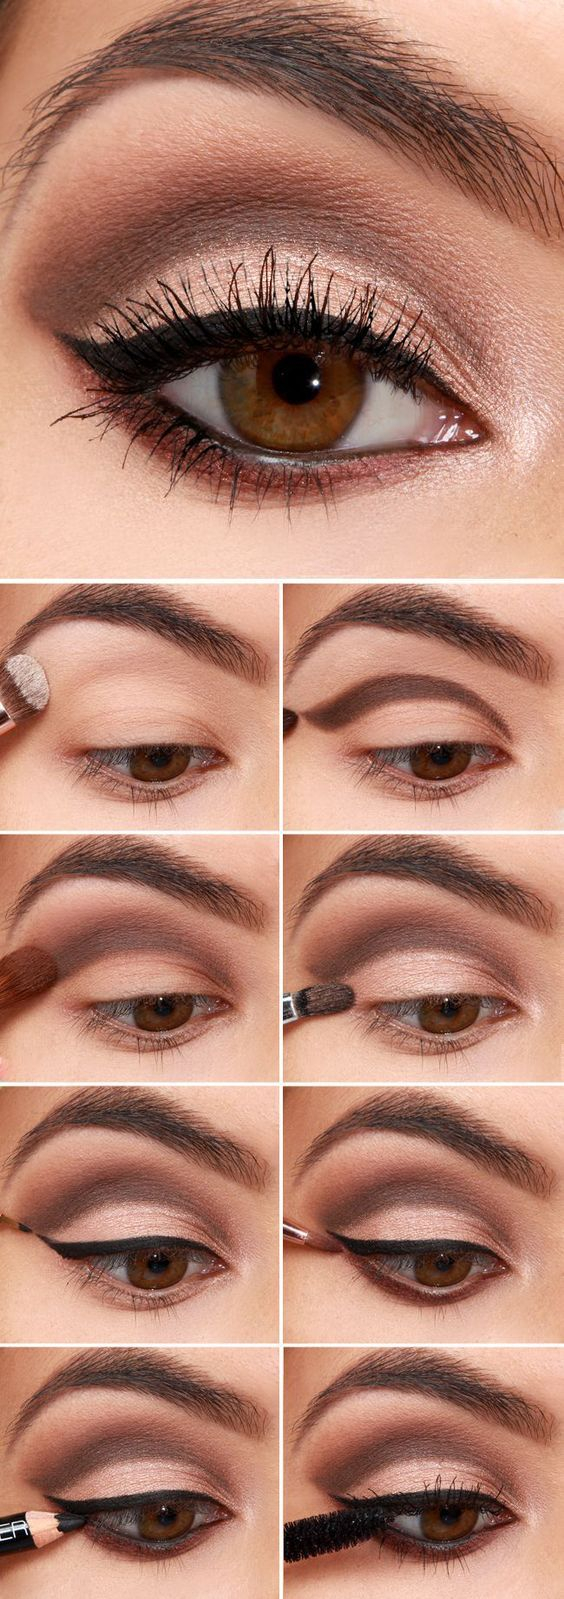 Makeup Tutorial For Brown Eyes 32 Easy Step Step Eyeshadow Tutorials For Beginners Makeup